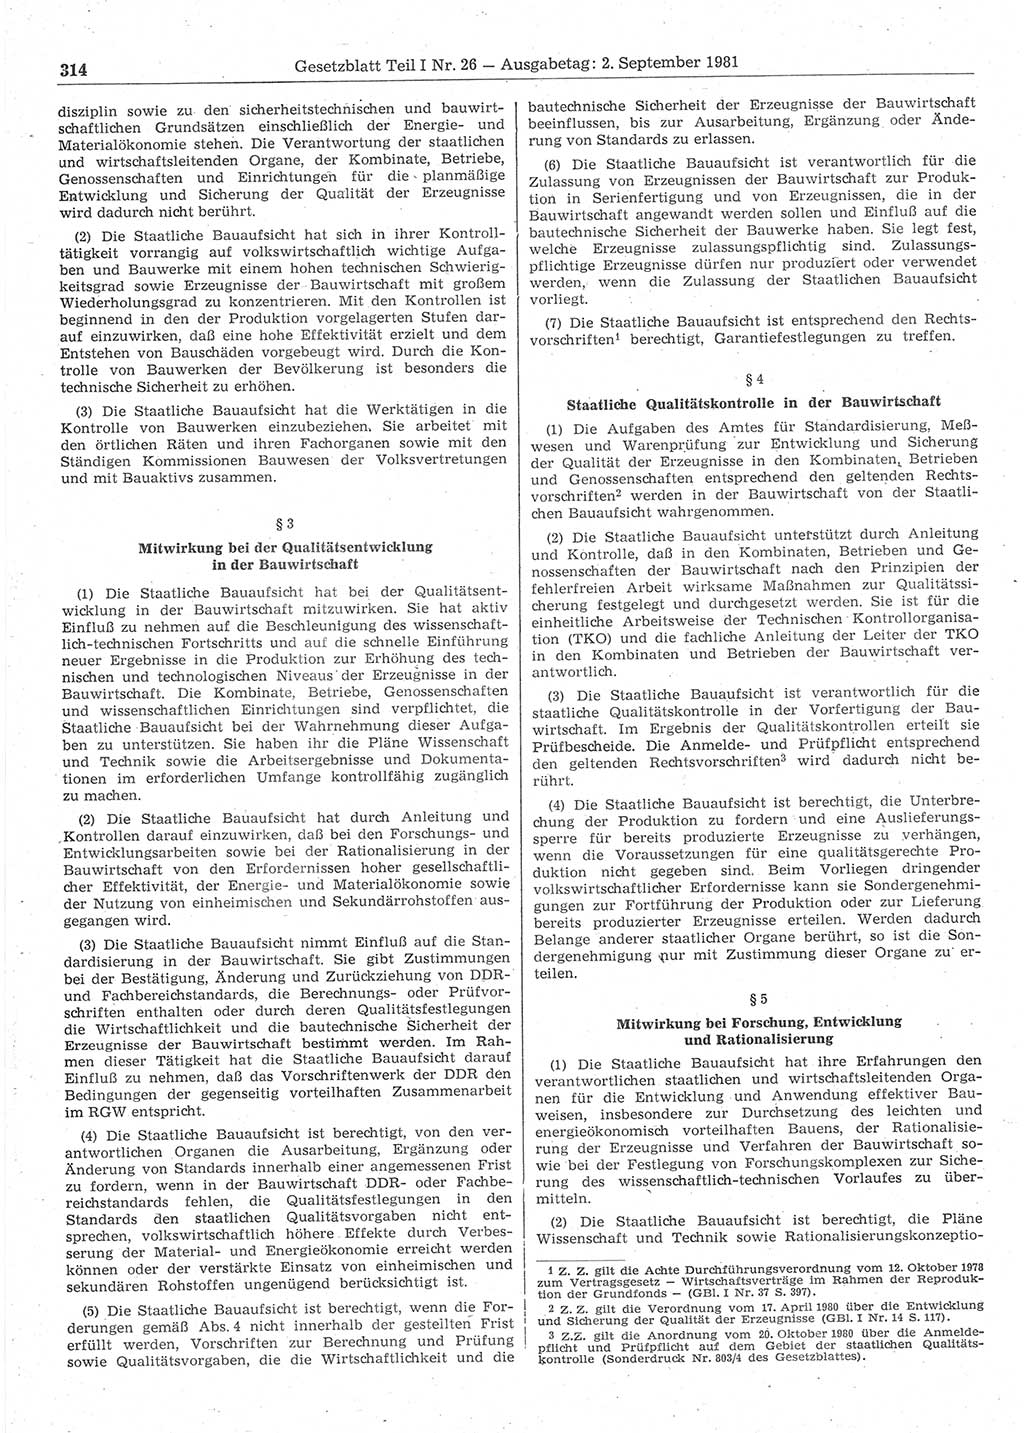 Gesetzblatt (GBl.) der Deutschen Demokratischen Republik (DDR) Teil Ⅰ 1981, Seite 314 (GBl. DDR Ⅰ 1981, S. 314)